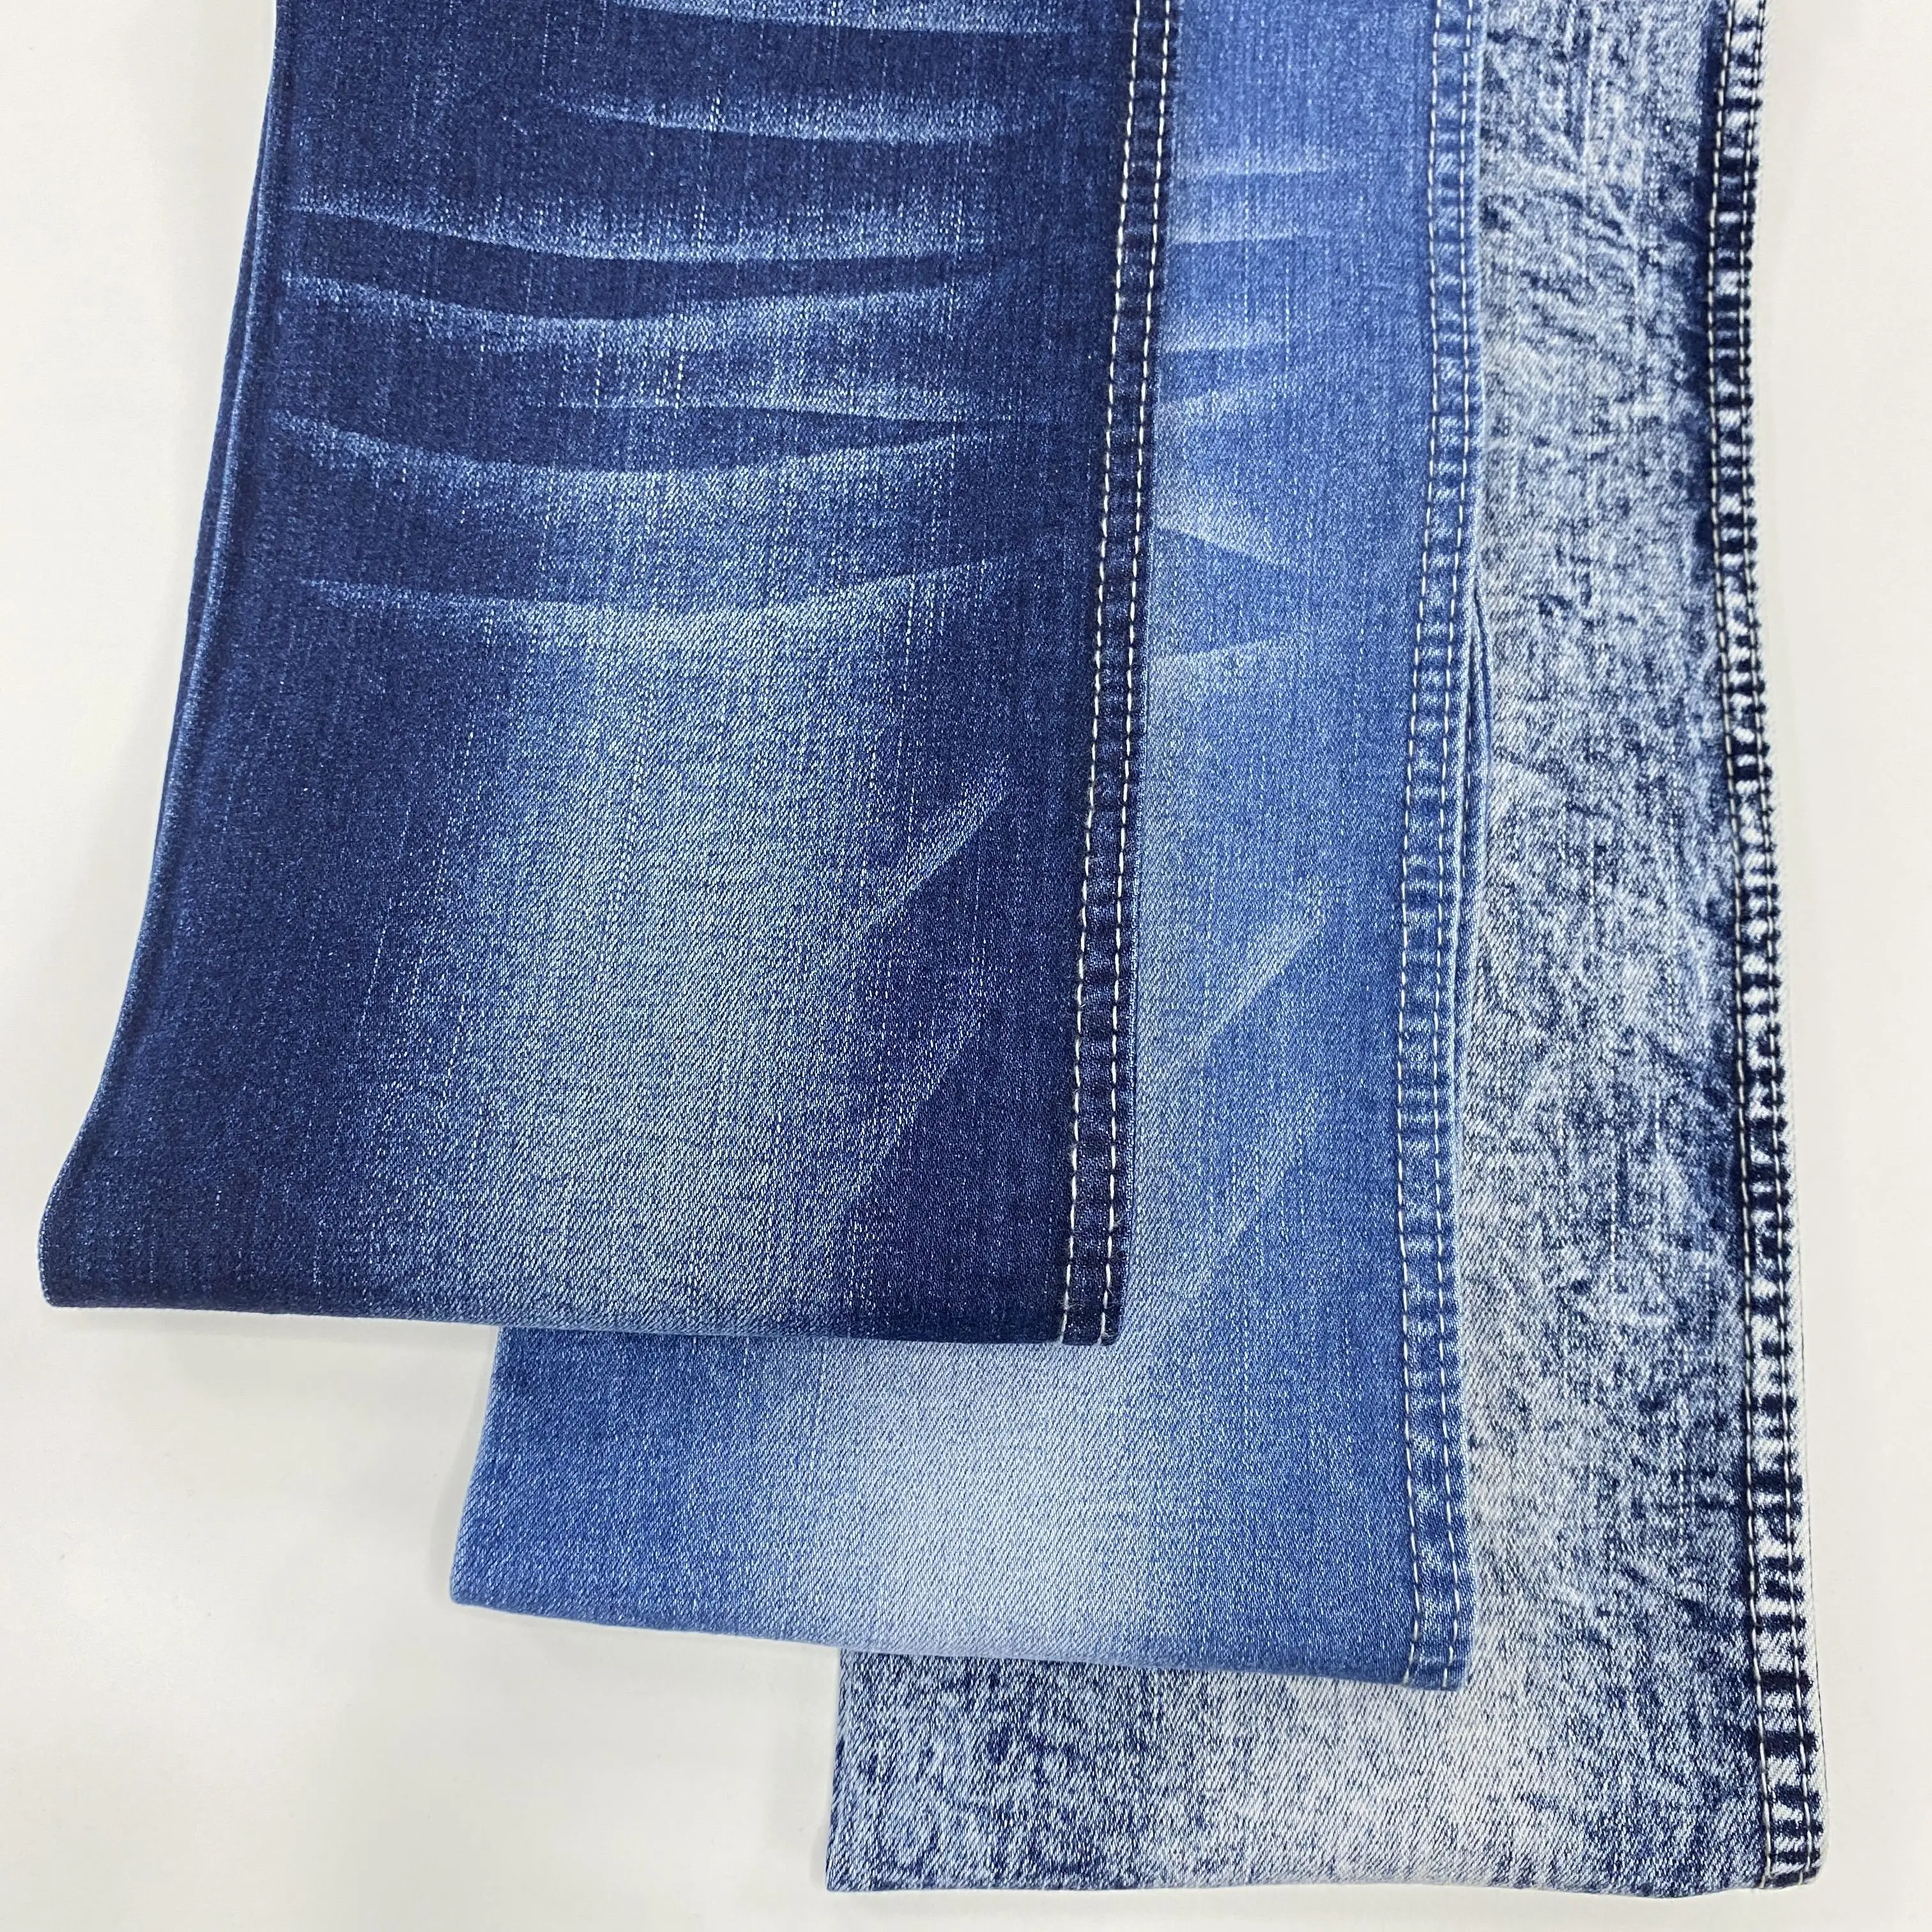 Artículo de Venta caliente 10 Oz Azul oscuro 99% Algodón 1% Spandex Tela de mezclilla de alta elasticidad para jeans Comprar de China